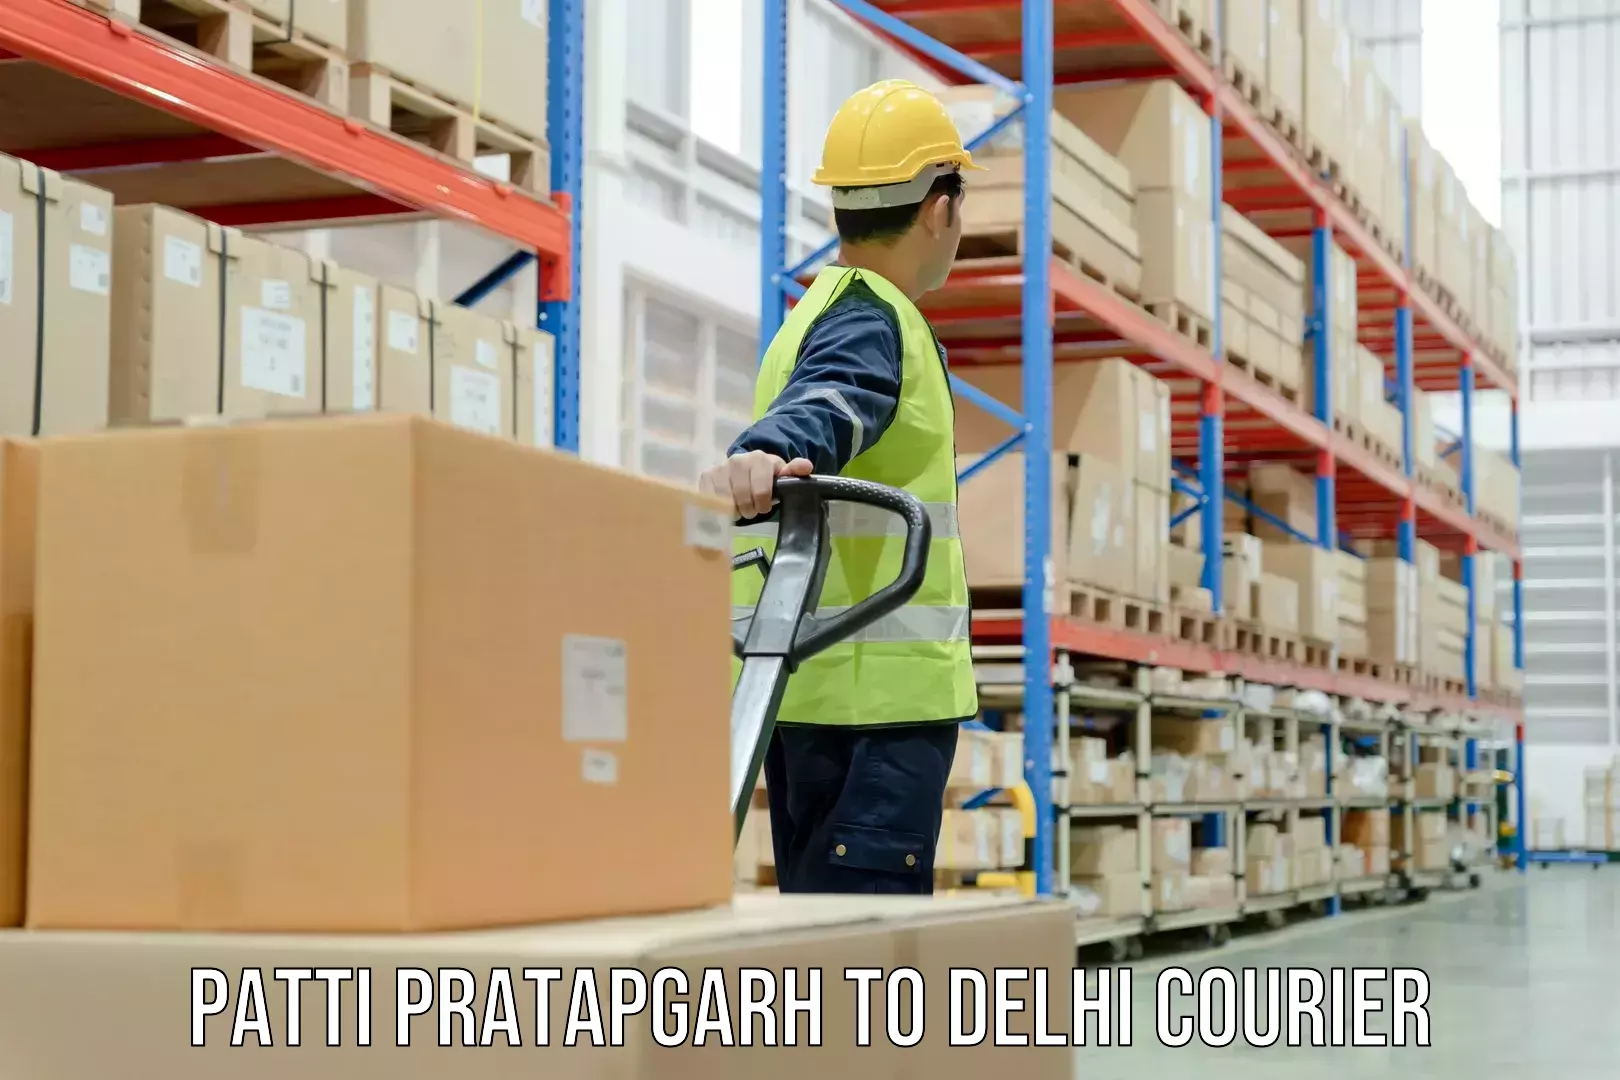 Express delivery capabilities Patti Pratapgarh to Delhi